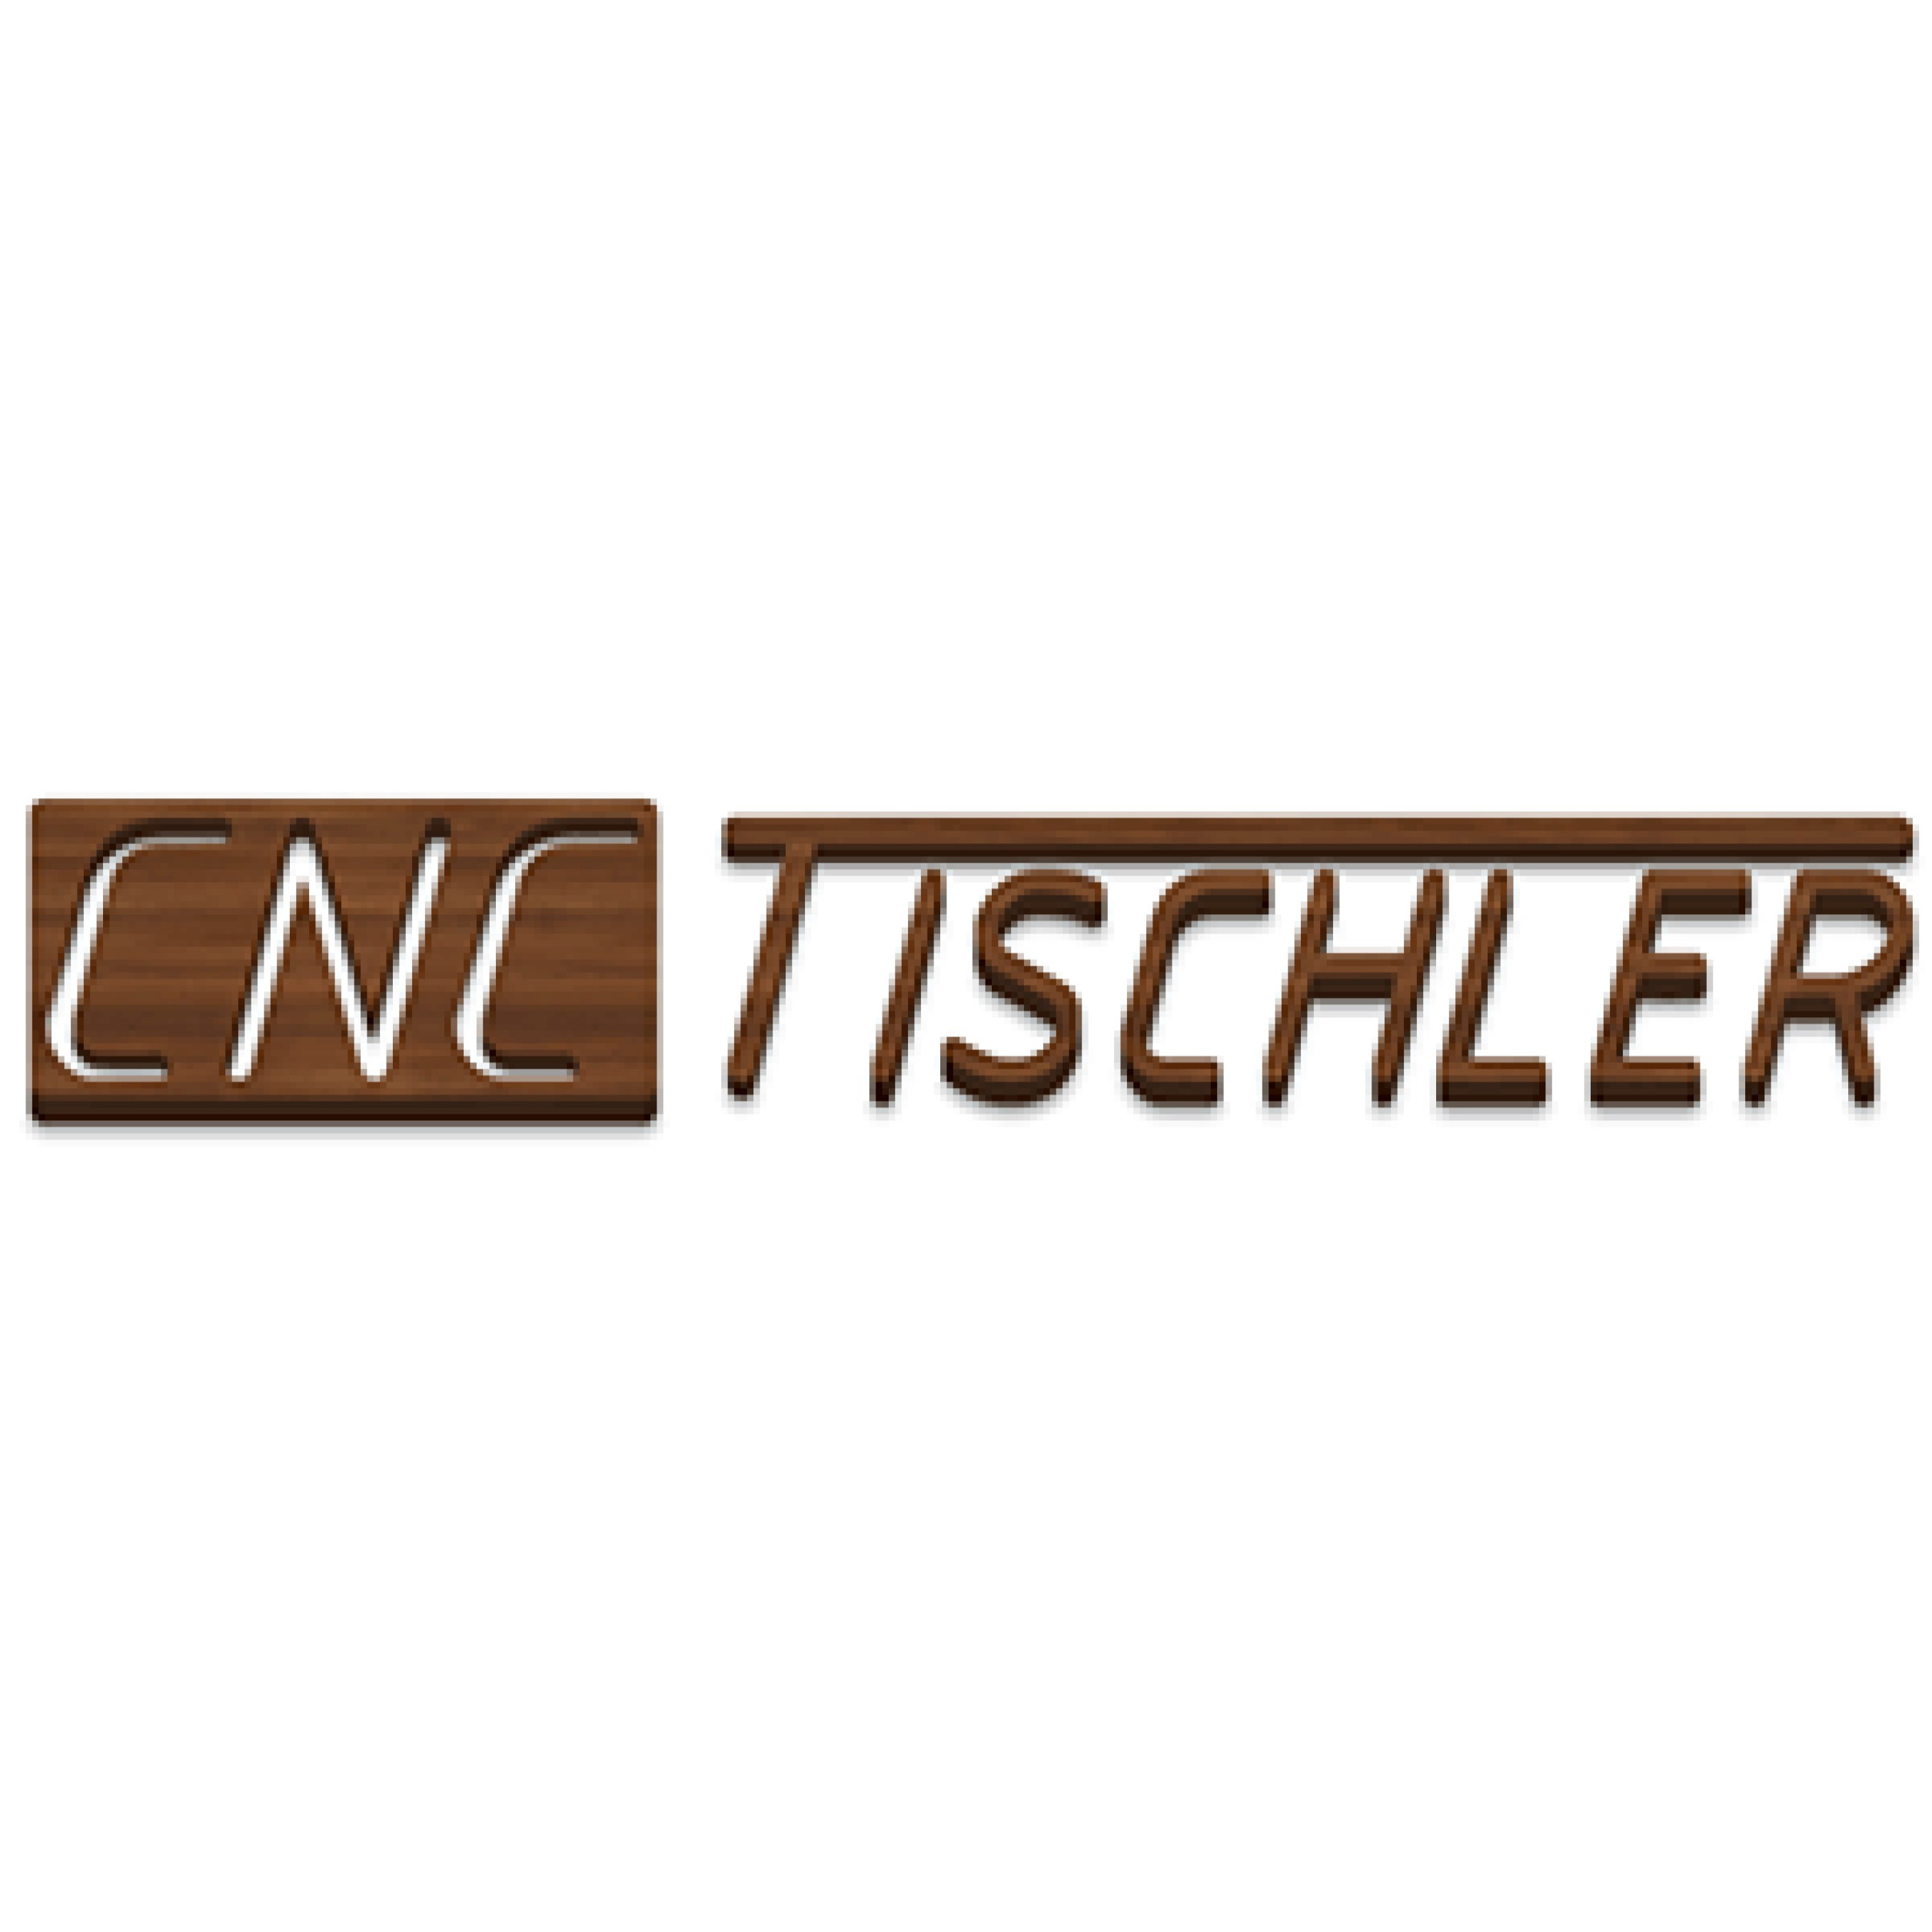 CNC Tischler - LOGO